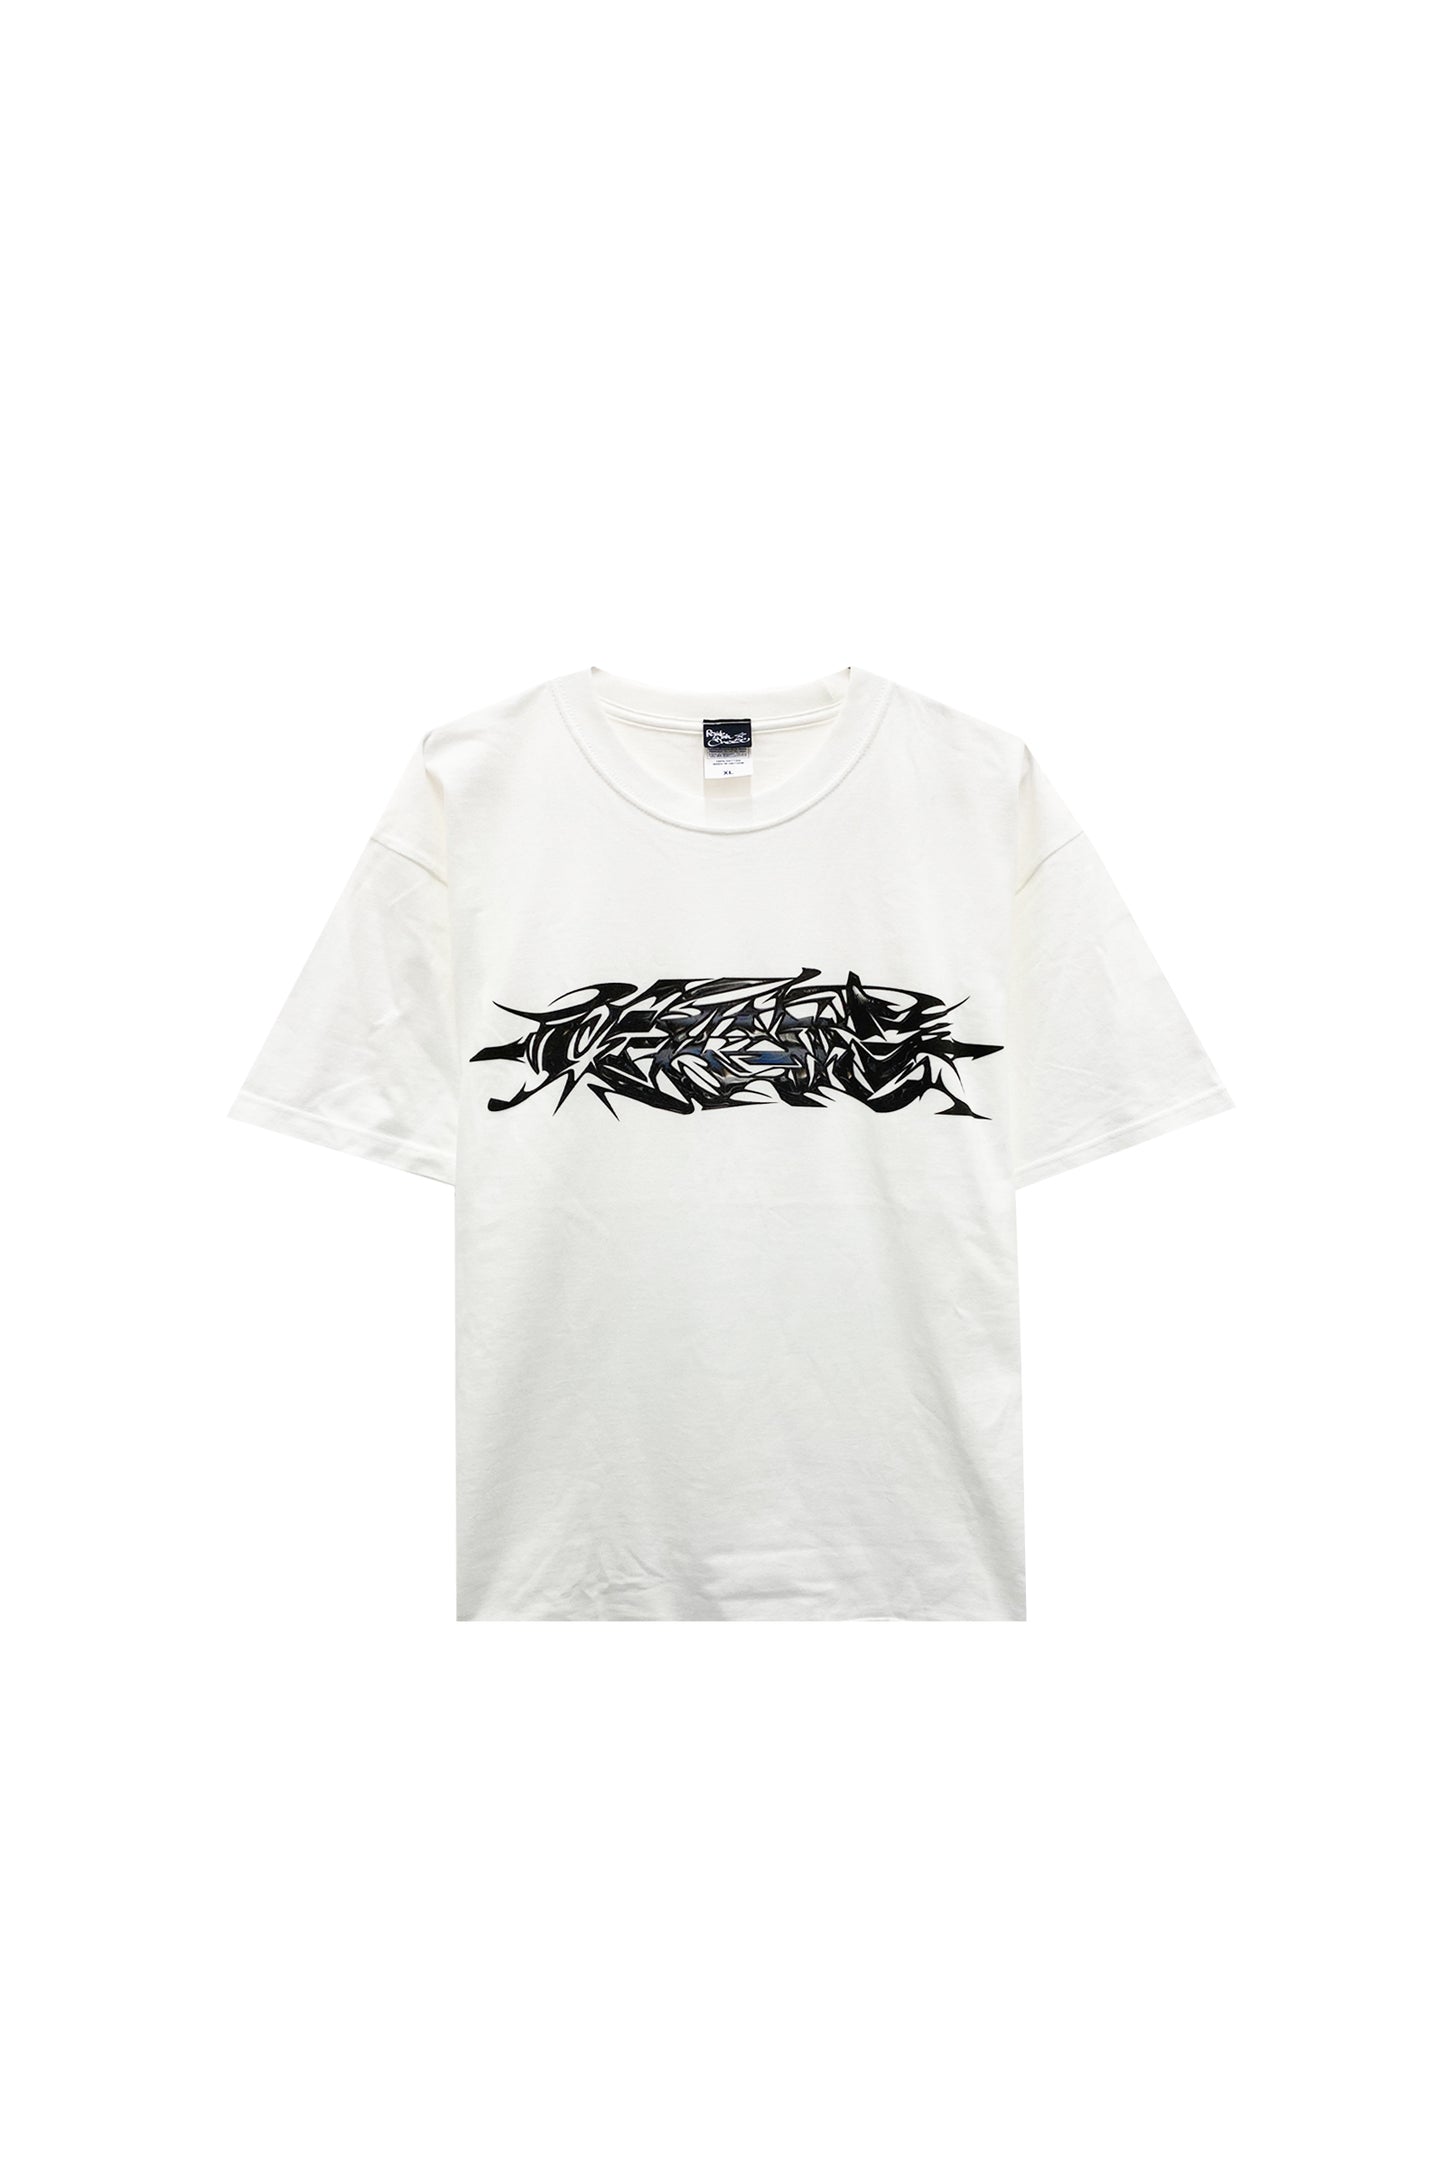 グッチメイズ/guccimaze T-shirts/Tシャツ/White